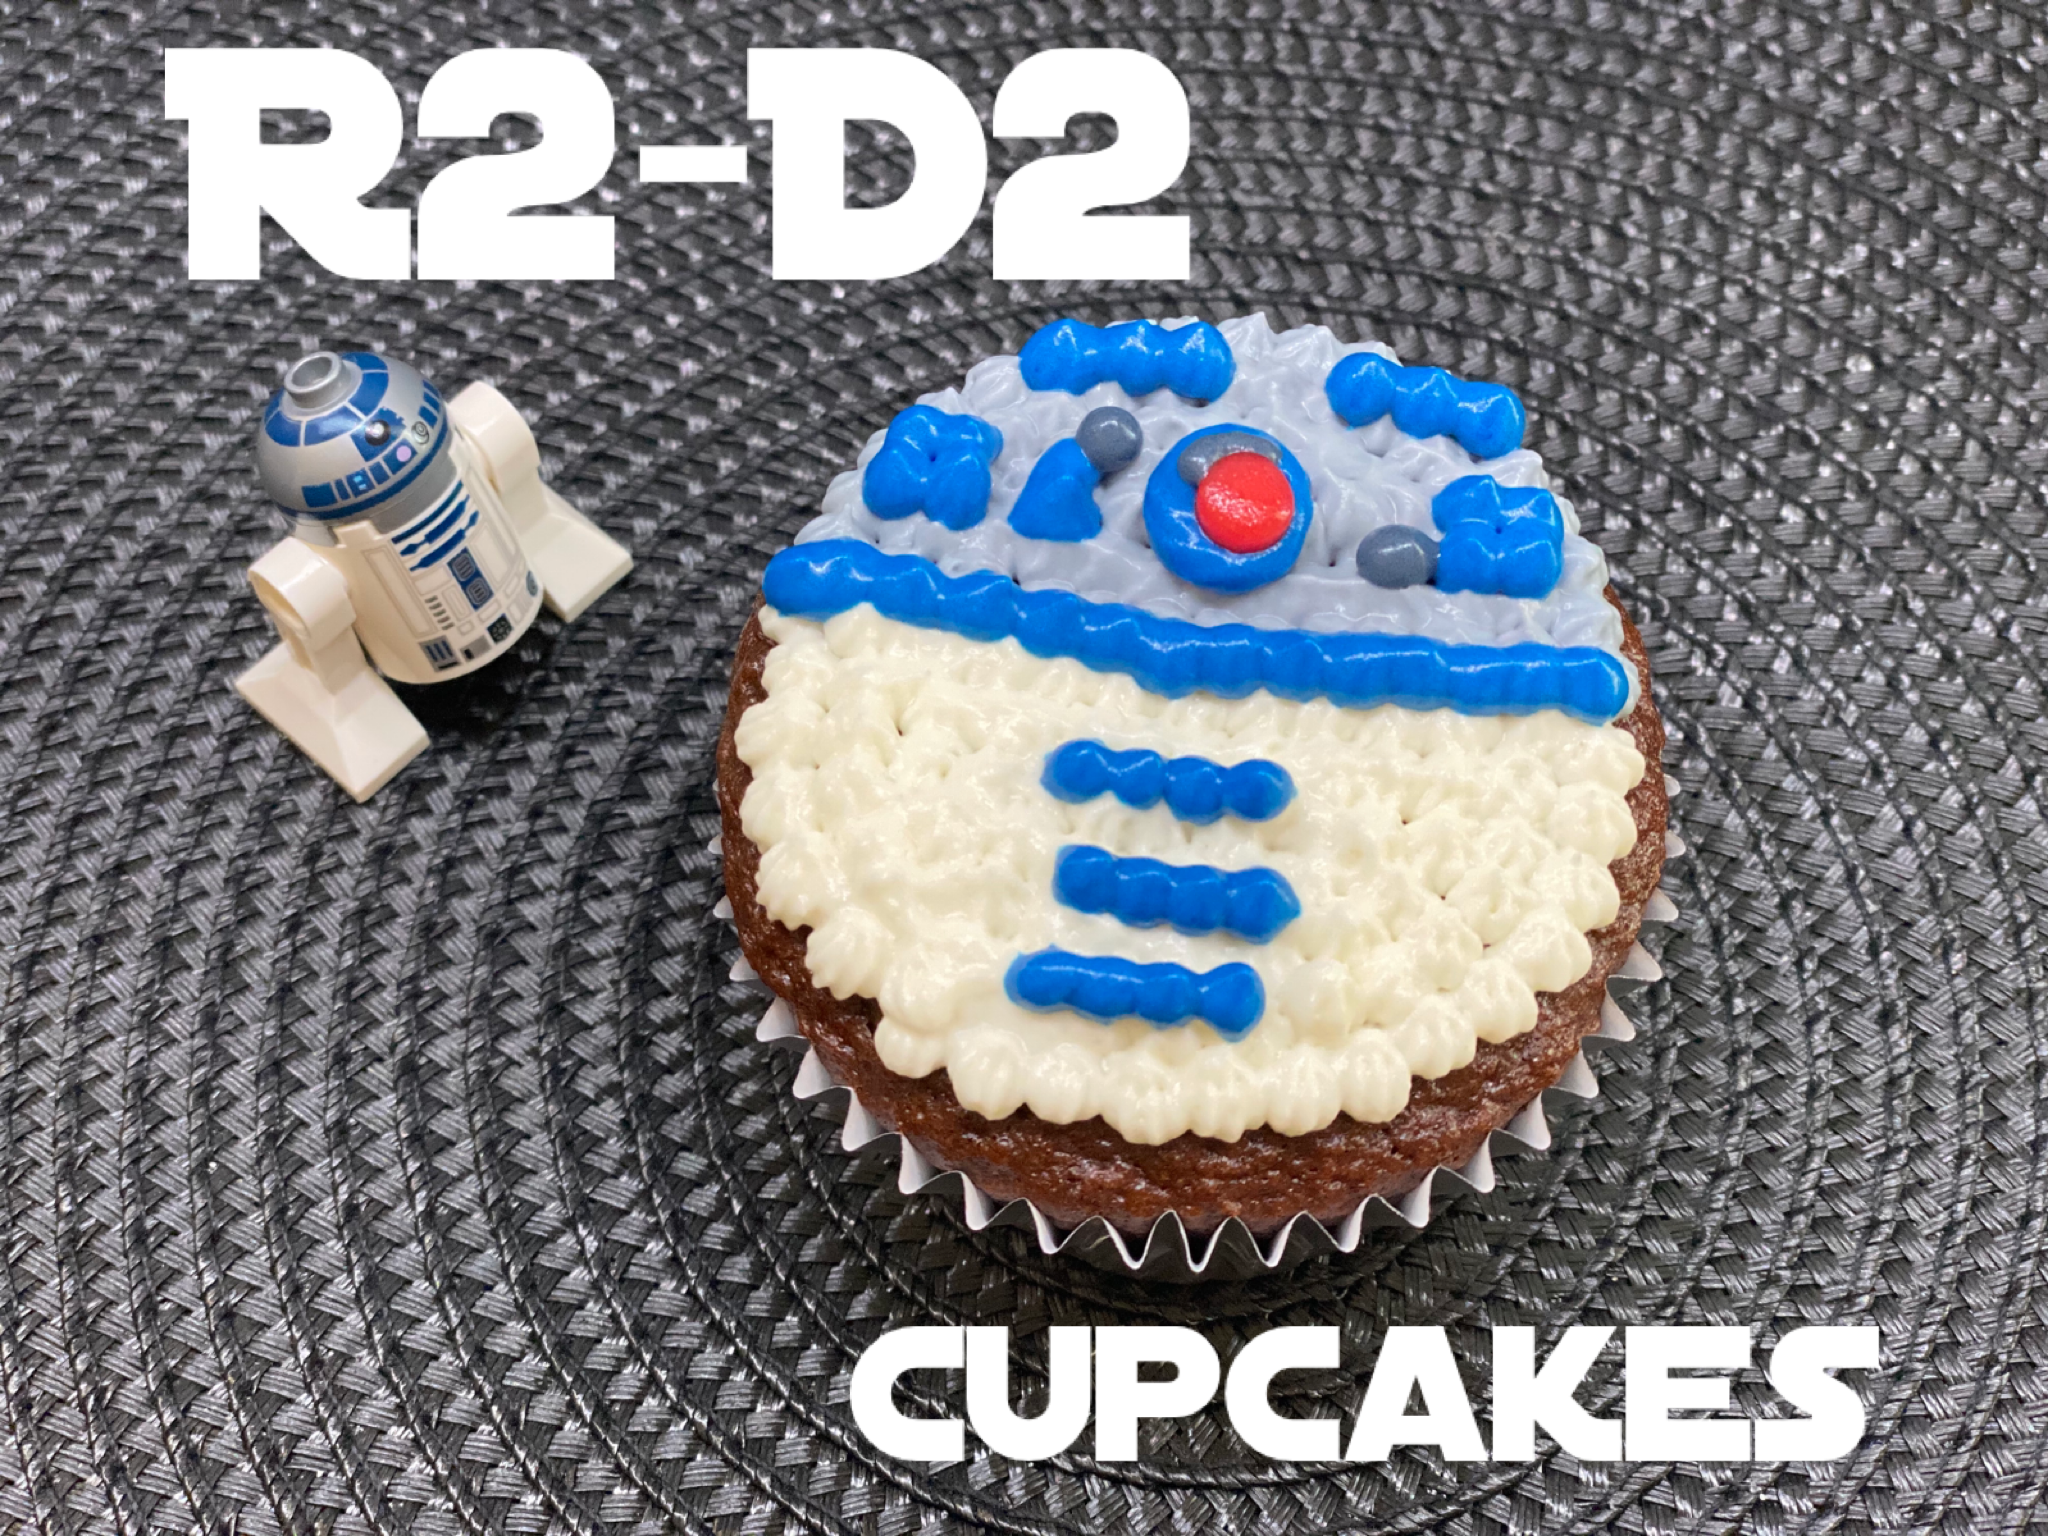 r2d2 cupcakes